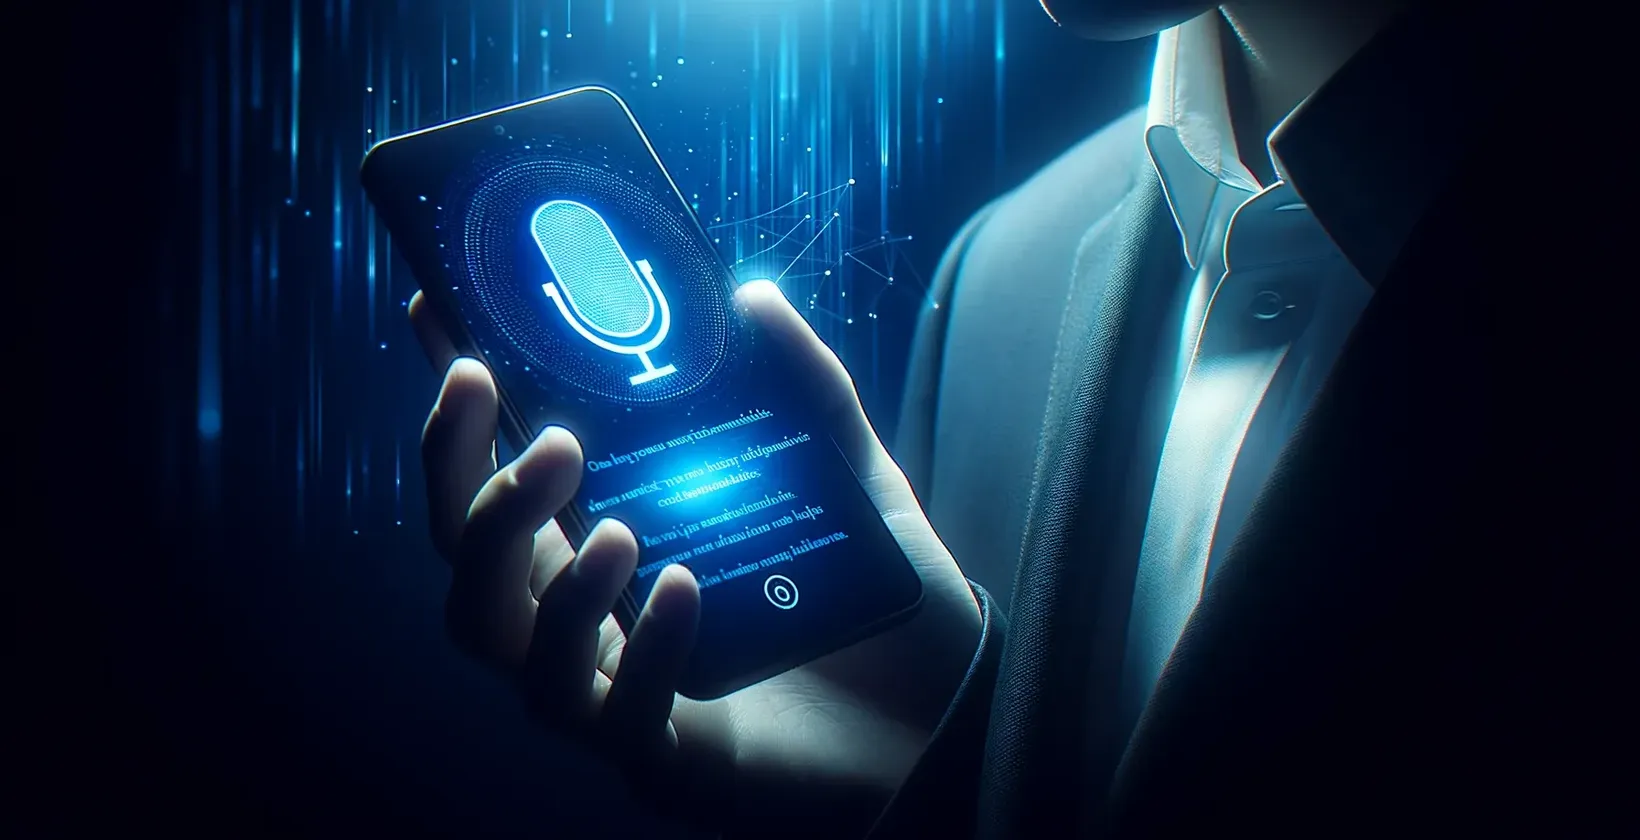 एक सुरुचिपूर्ण कपड़े पहने हुए व्यक्ति एक स्मार्टफोन पकड़े हुए है, जो एक श्रुतलेख ऐप का उपयोग करते हुए स्क्रीन पर एक वॉयस असिस्टेंट प्रदर्शित करता है।